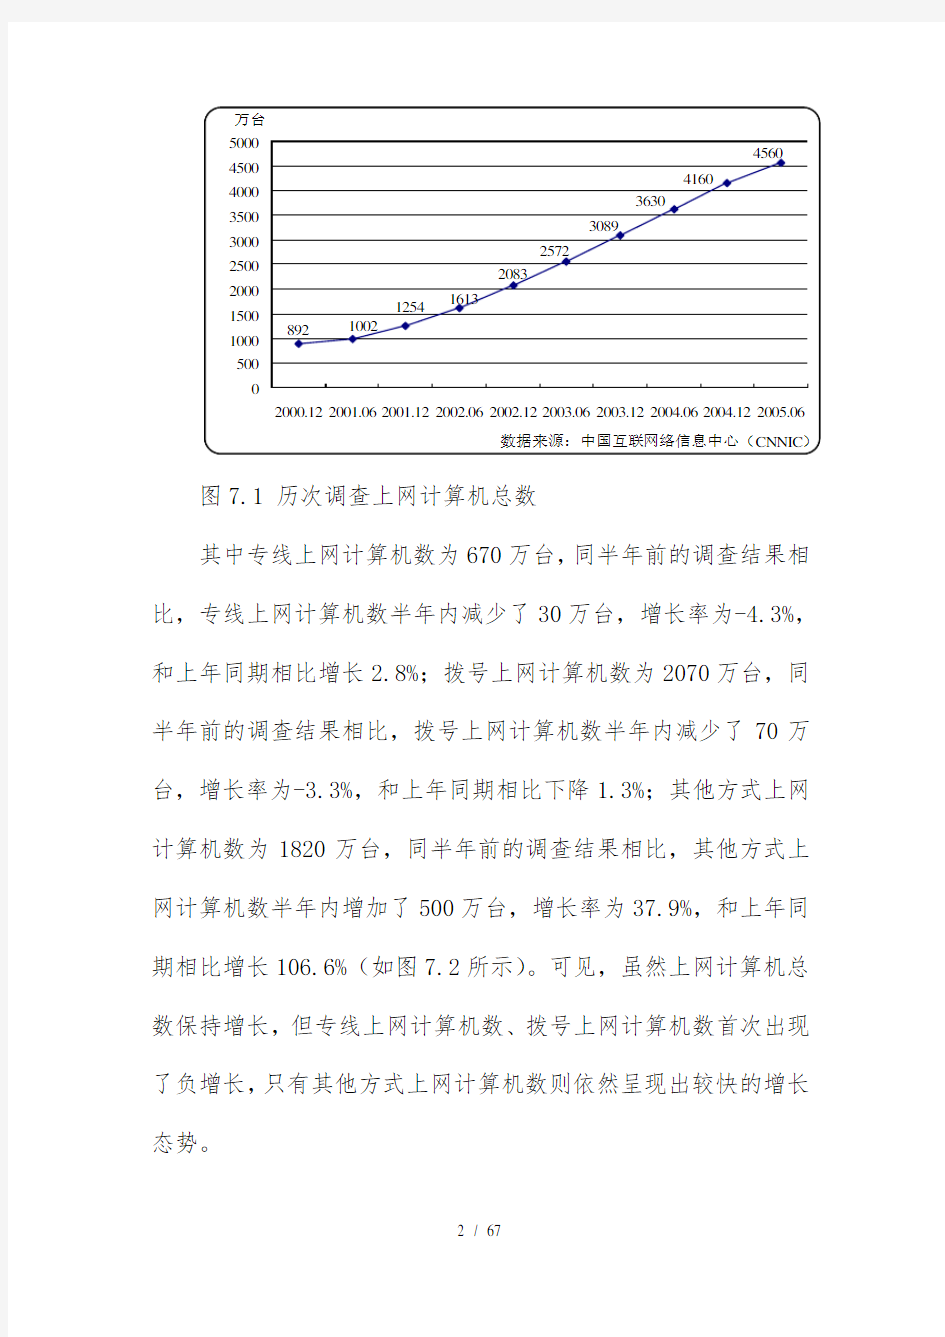 中国互联网络发展状况分析报告